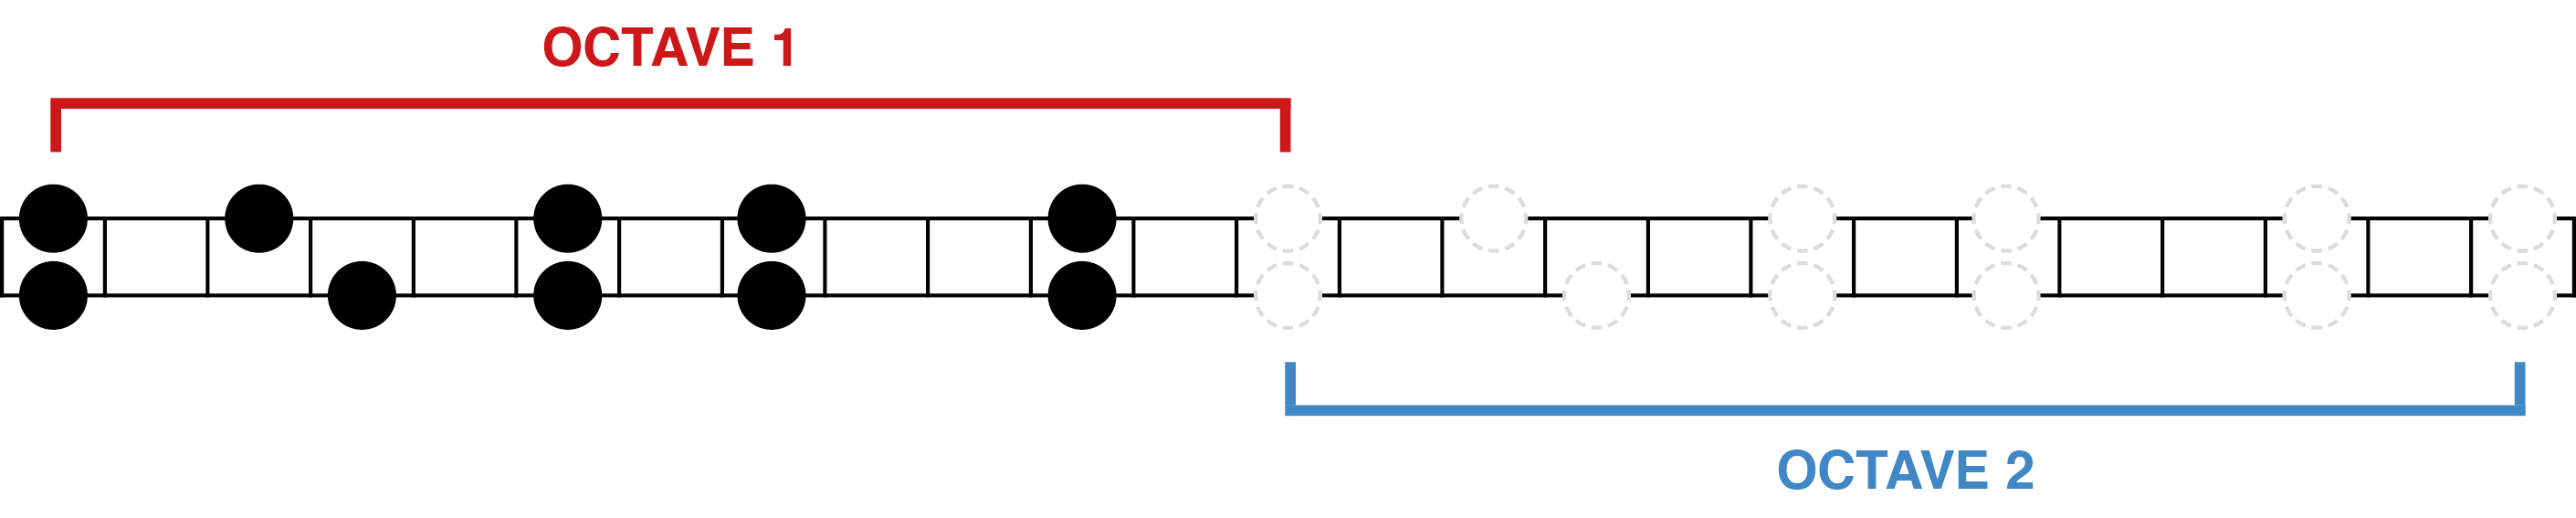 Formule Tetris - court - long - court sur 2 octaves (gamme pentatonique)